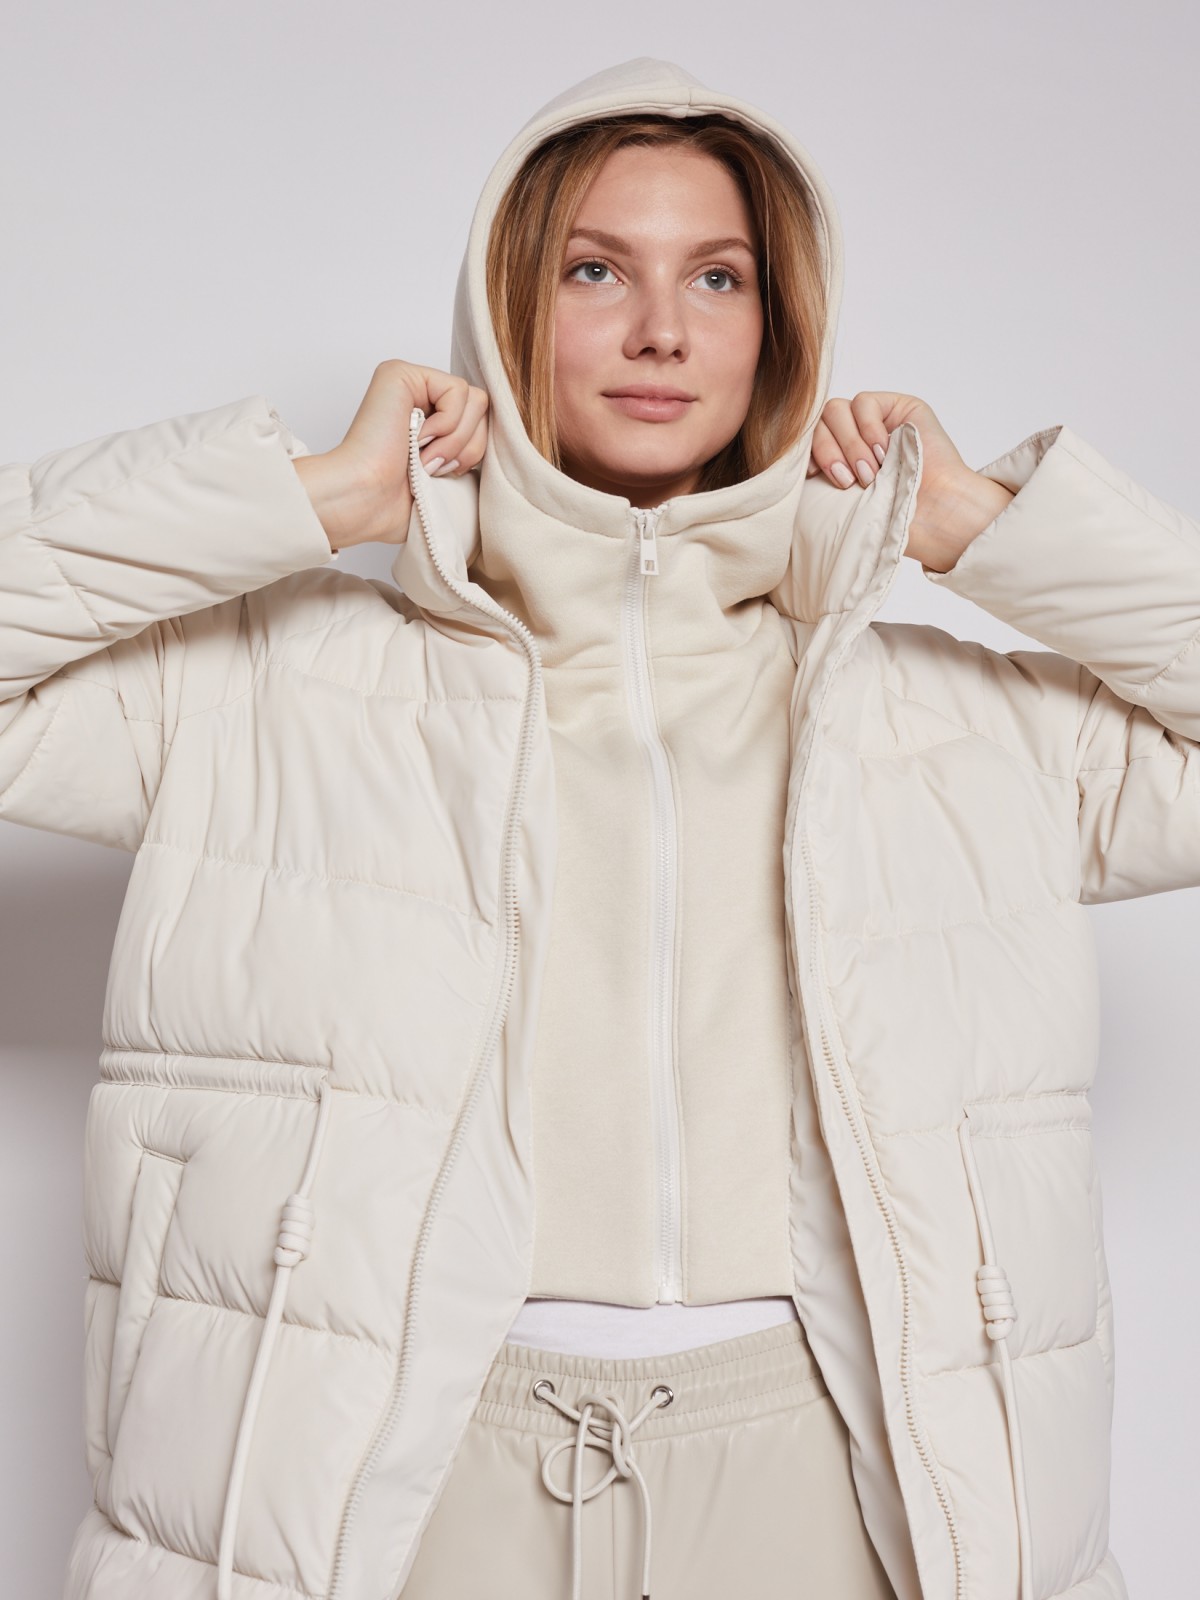 Утеплённое пальто Oversize с капюшоном и манишкой zolla 02212522J044, цвет молоко, размер XS - фото 3